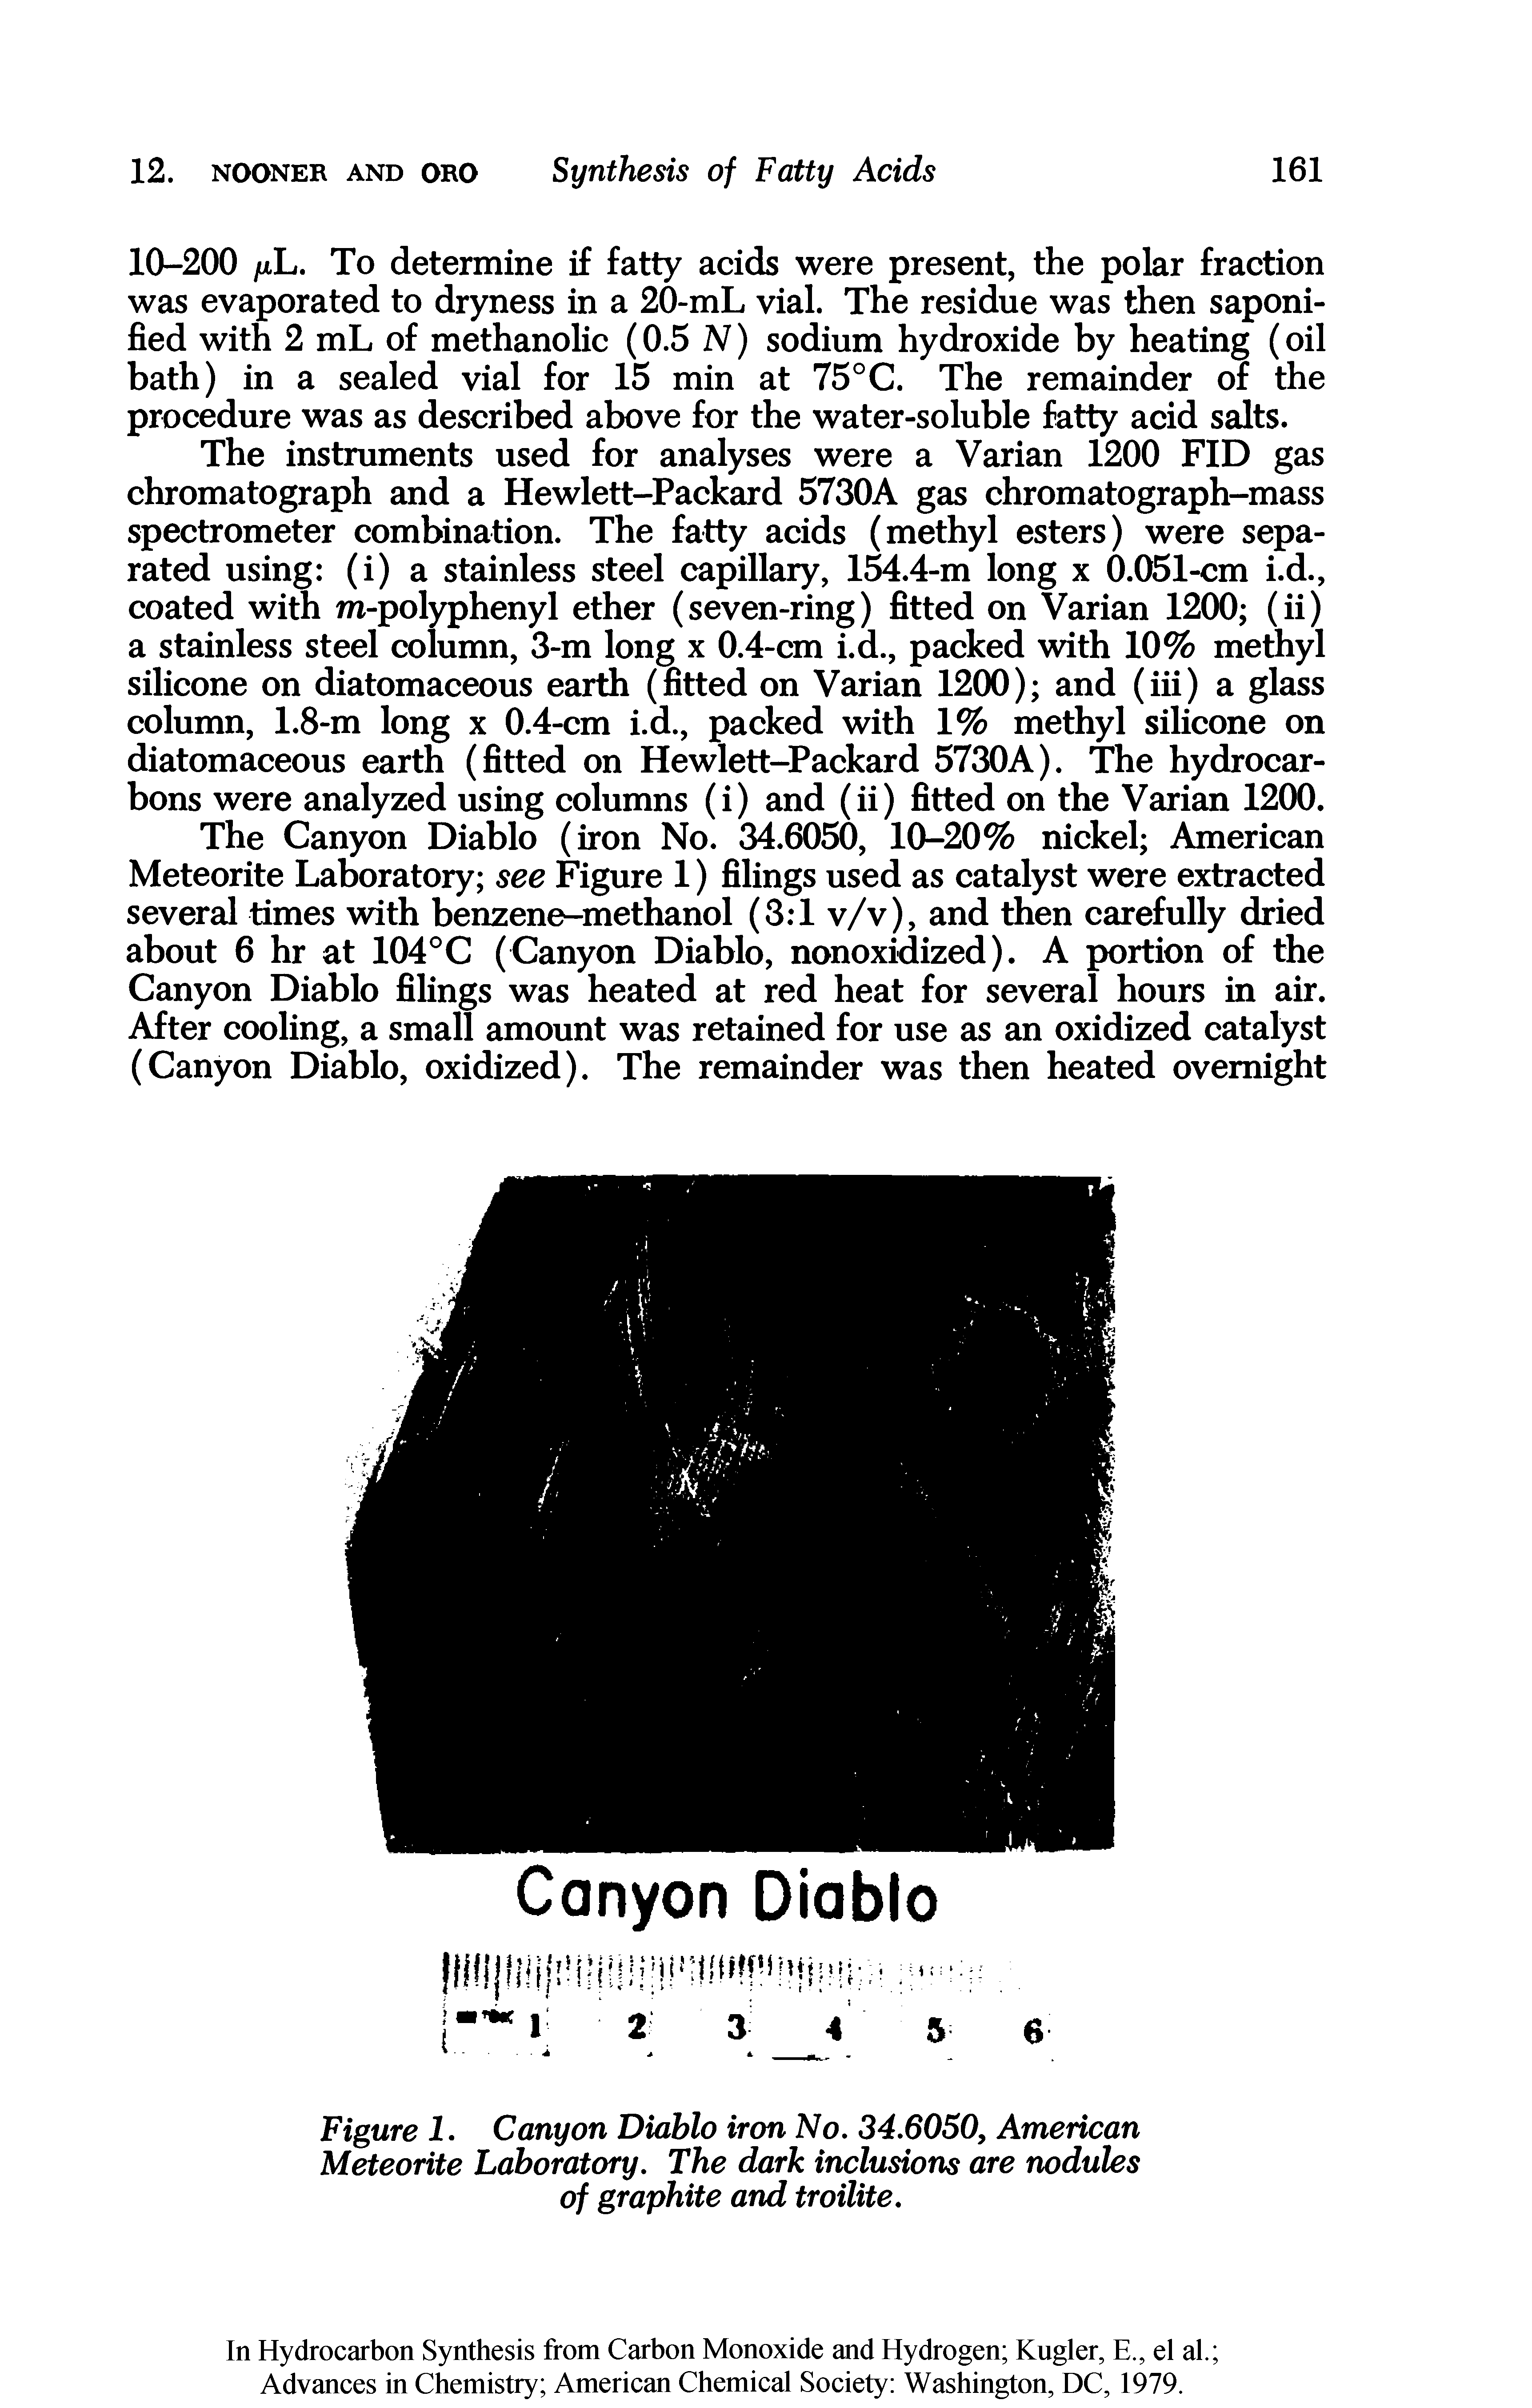 Figure I. Canyon Diablo iron No, 34,6050, American Meteorite Laboratory, The dark inclusions are nodules of graphite and troilite.